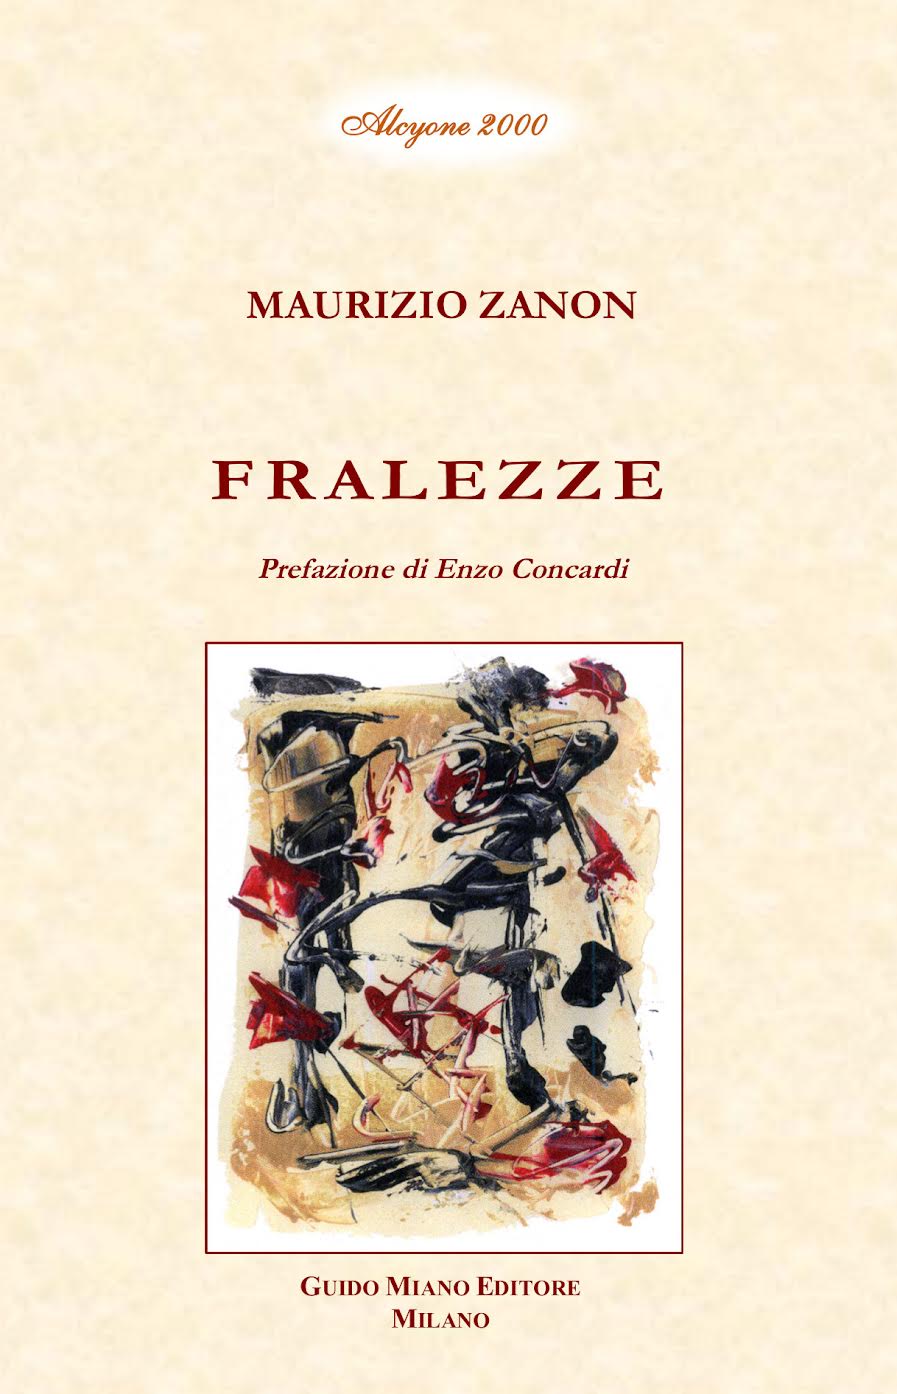 Recensione di Maurizio Zanon FRALEZZE